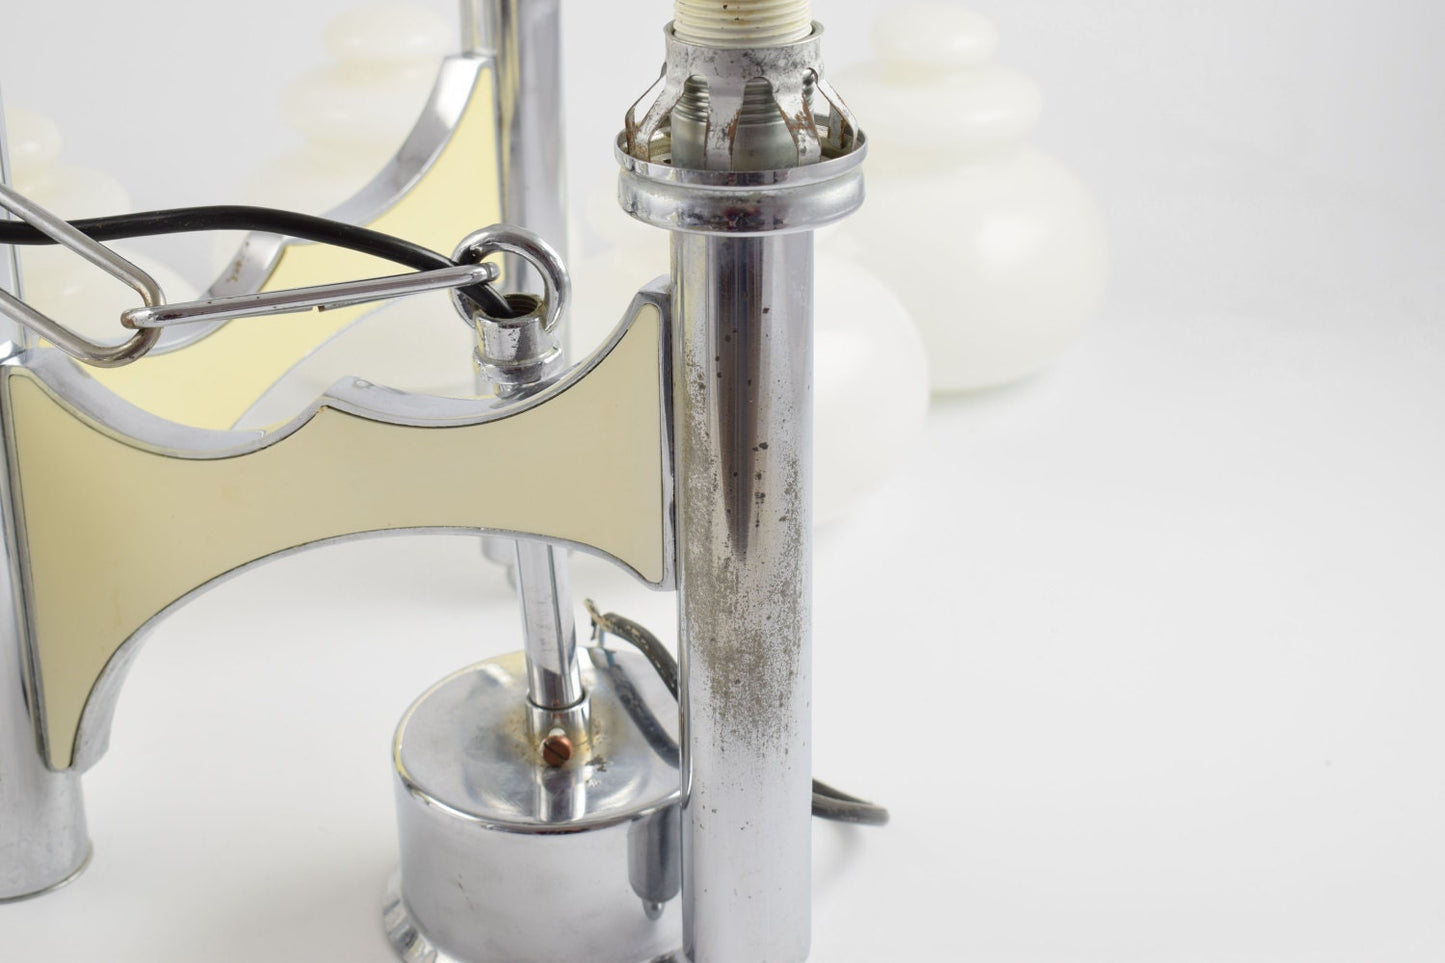 Lámpara colgante Sciolari, gran lámpara regencia italiana de cinco brazos en cromo y cristal blanco